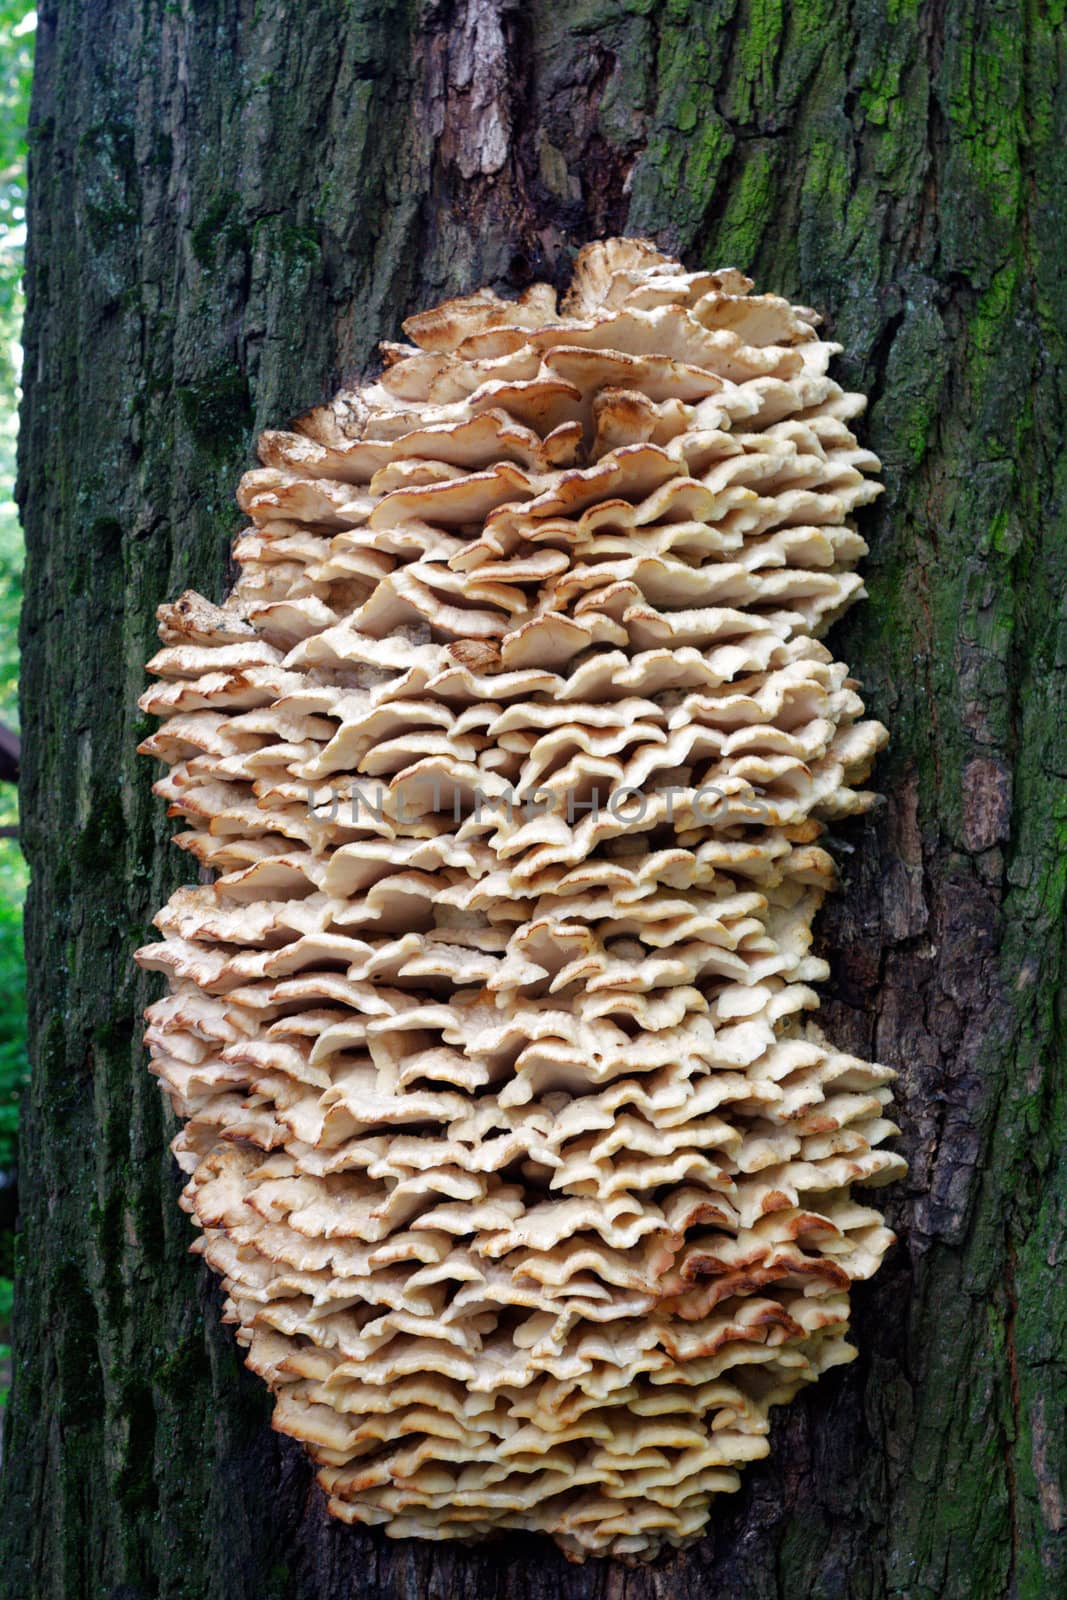 Tree Fungus by Roka